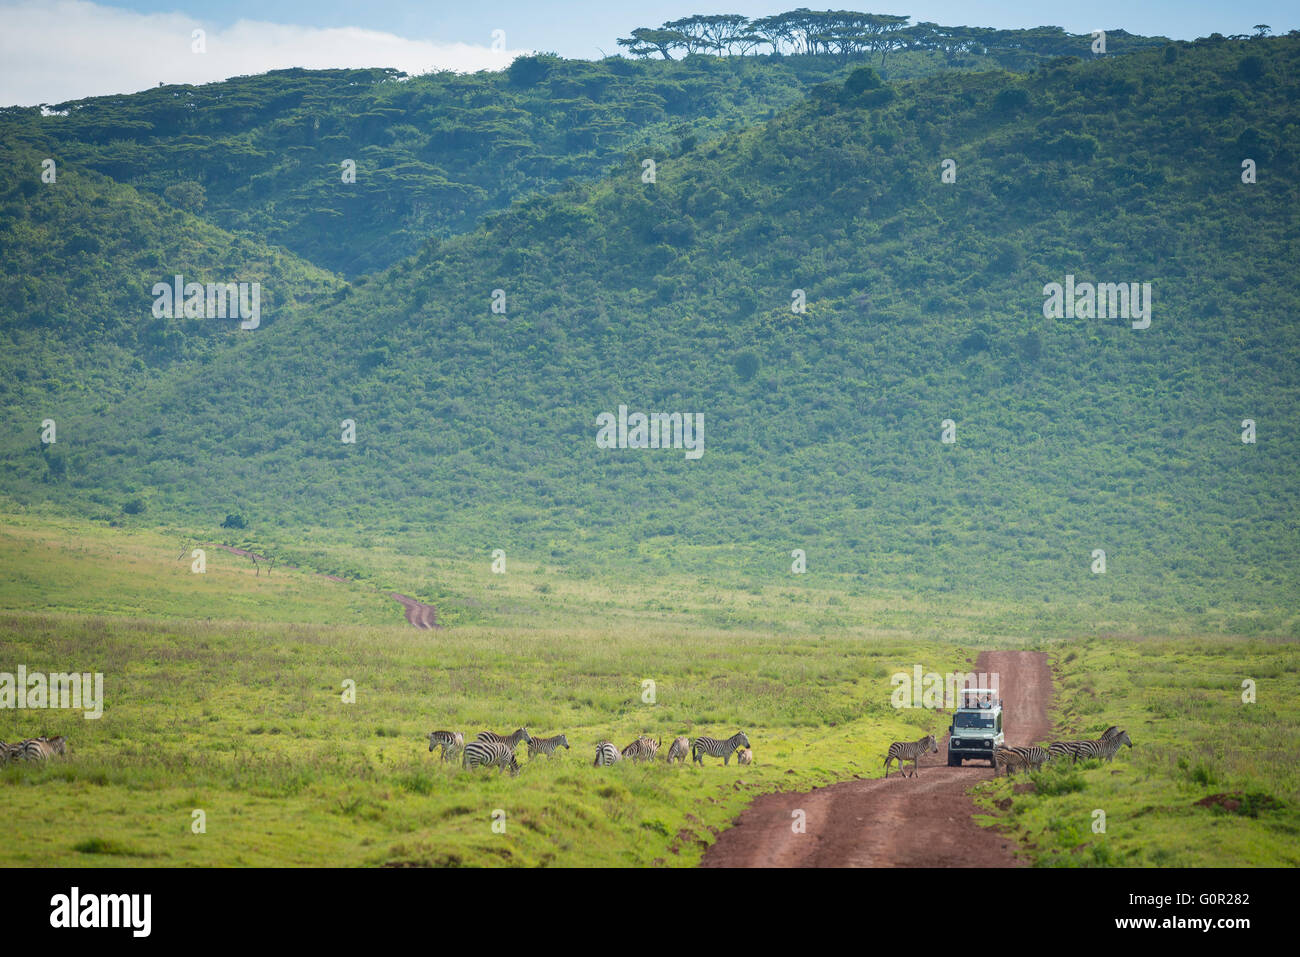 Un jeep safari turístico recorre un camino de tierra entre wild cebra en el cráter del Ngorongoro, Tanzania, África Oriental Foto de stock